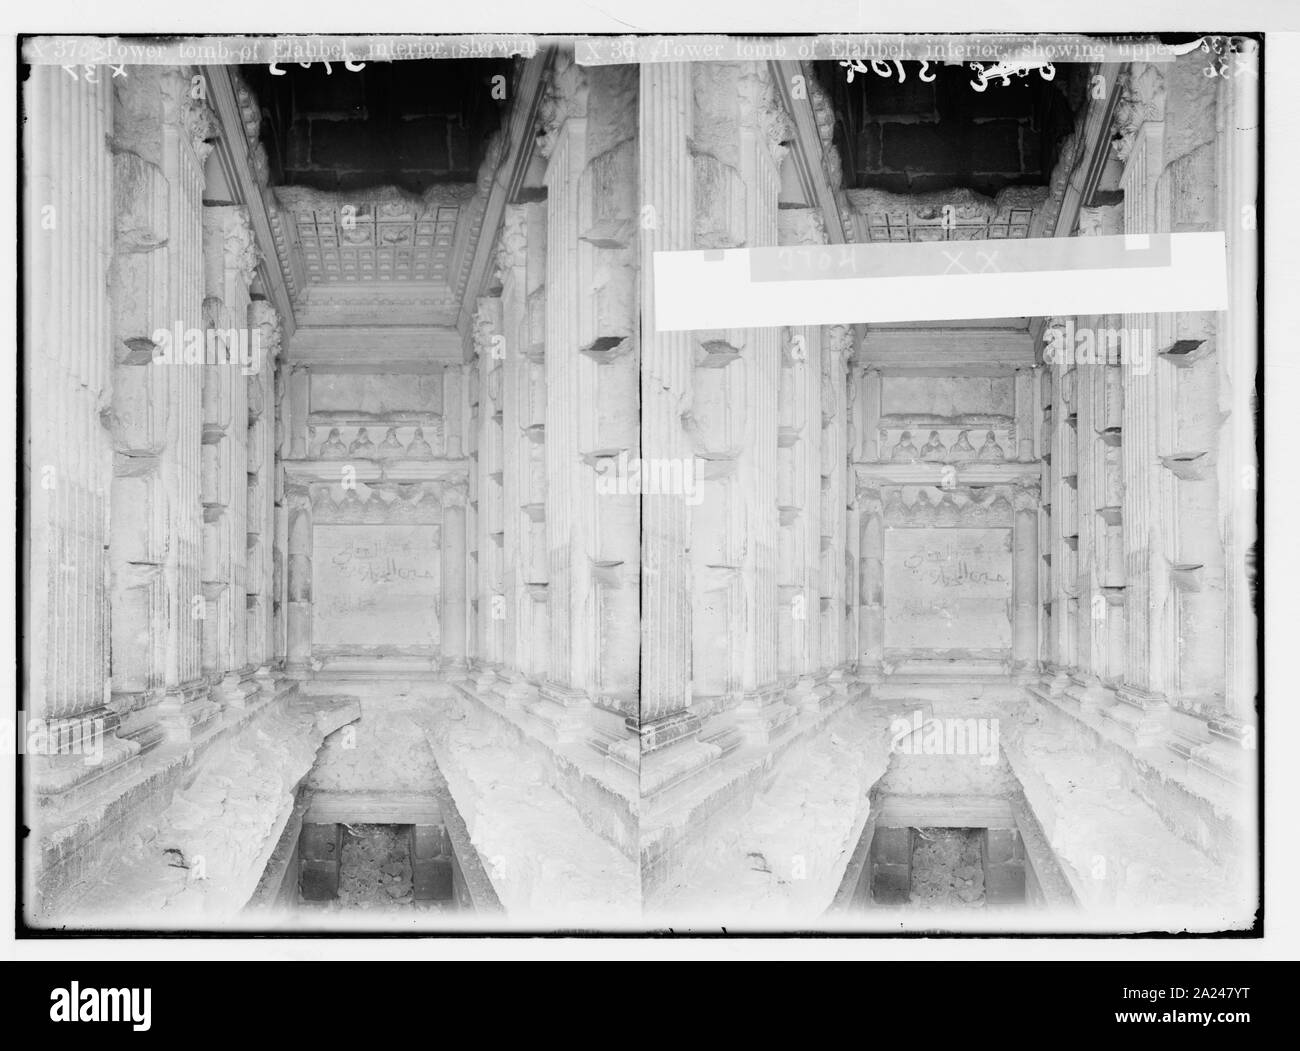 Palmyra. Turm Grab von Elahbel. Interieur mit Decke, Pilaster und Grab Nischen; unterer Bereich mit Krypta und geschnitzten Büsten Stockfoto